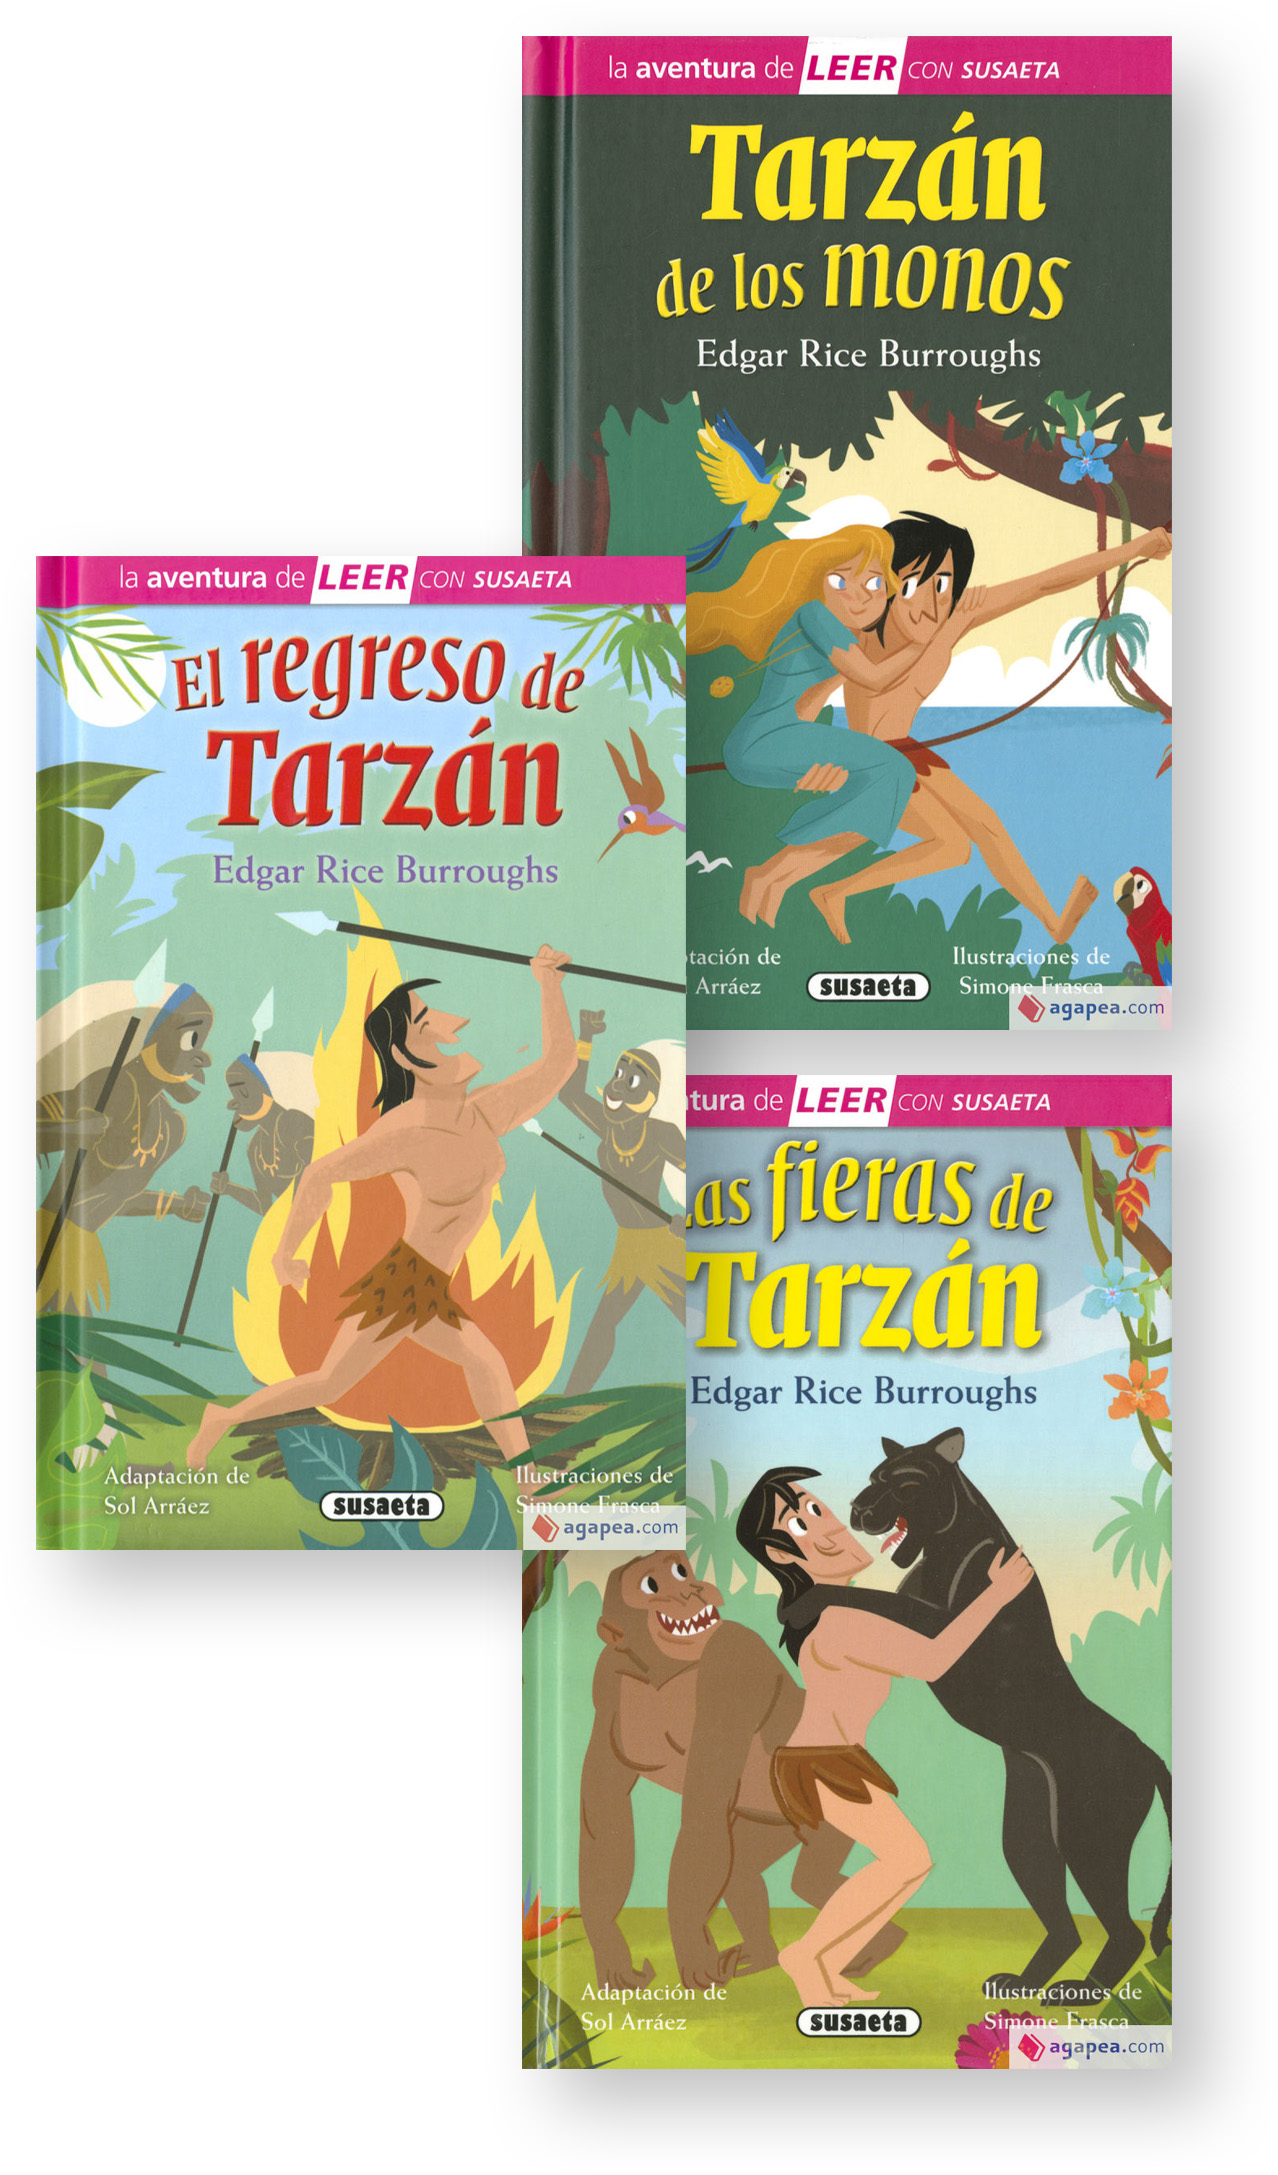 Tarzan - Illustrazioni di Simone Frasca